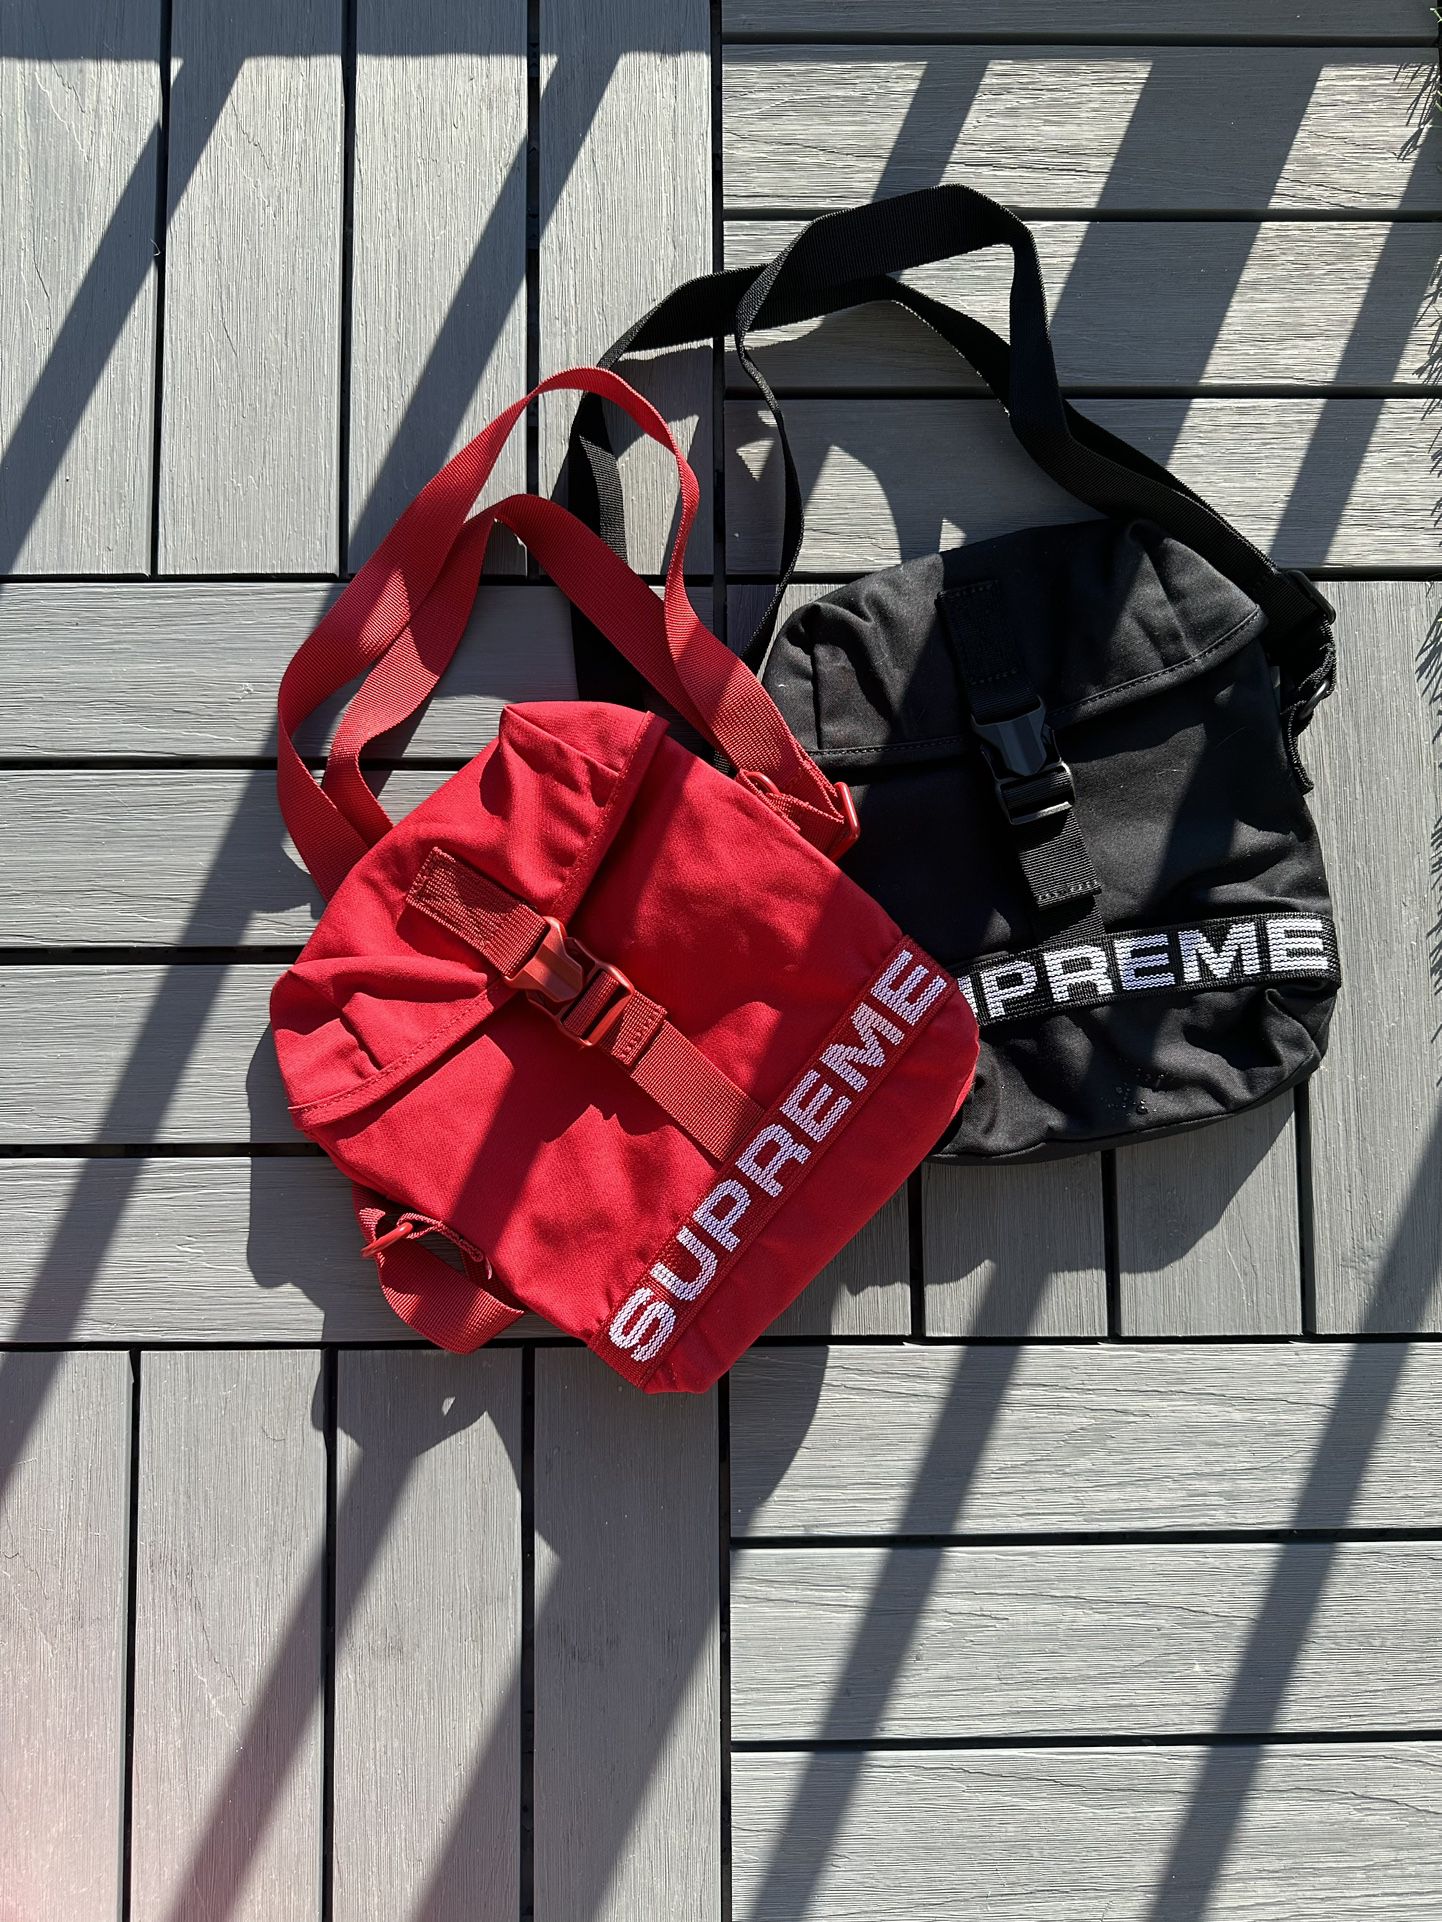 Supreme FW18 Shoulder Bag for Sale in Surprise, AZ - OfferUp